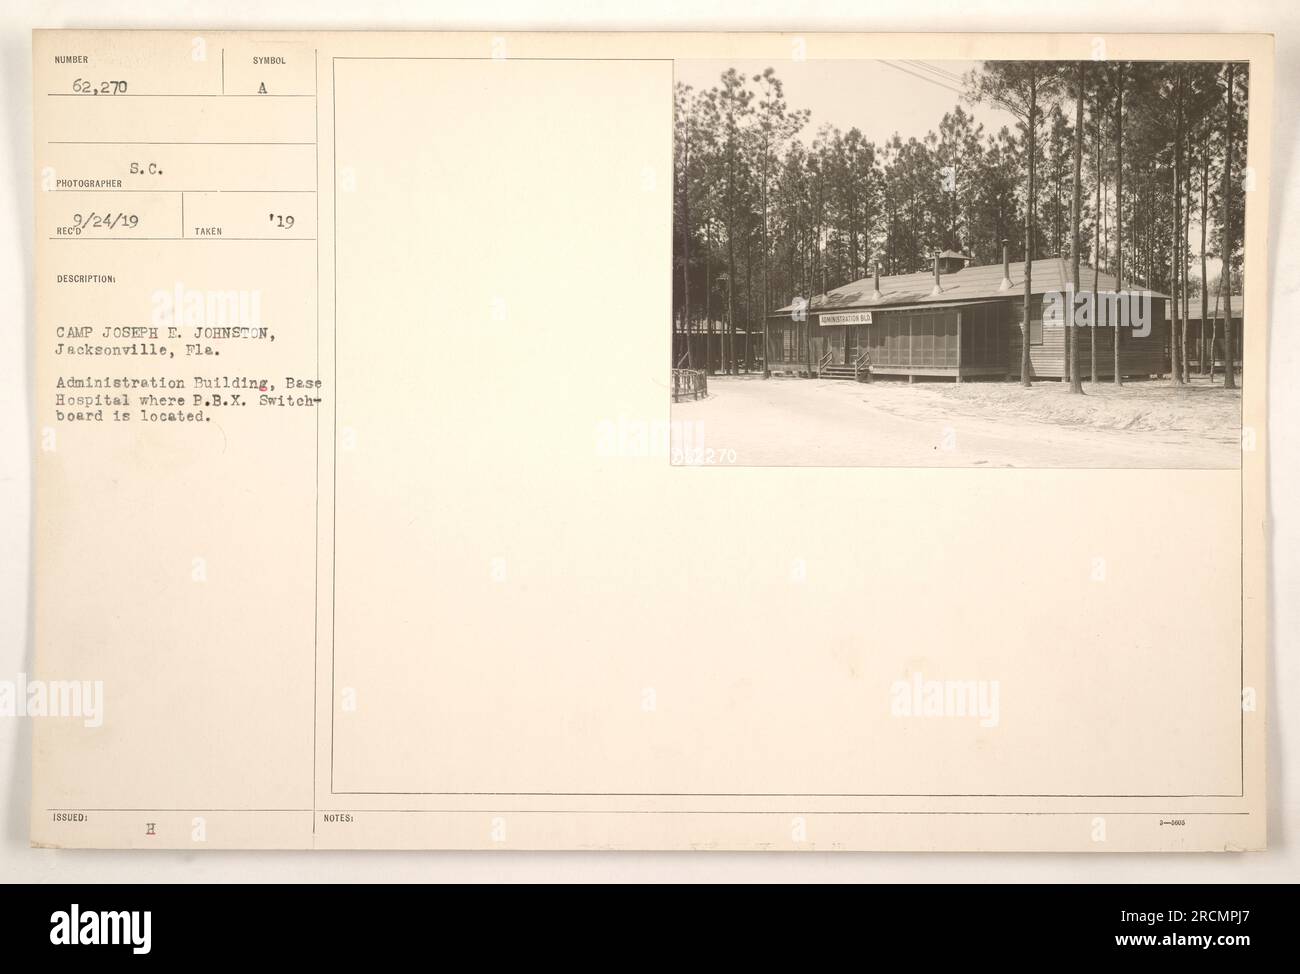 Un bâtiment de base de l'hôpital situé dans le camp Joseph E. Johnston à Jacksonville, en Floride pendant la guerre mondiale 1. Le bâtiment a servi d'emplacement au standard P.B.X. et la photographie a été prise par le photographe R/24/19. L'image fait partie d'une collection de photographies documentant les activités militaires américaines pendant la guerre. Banque D'Images